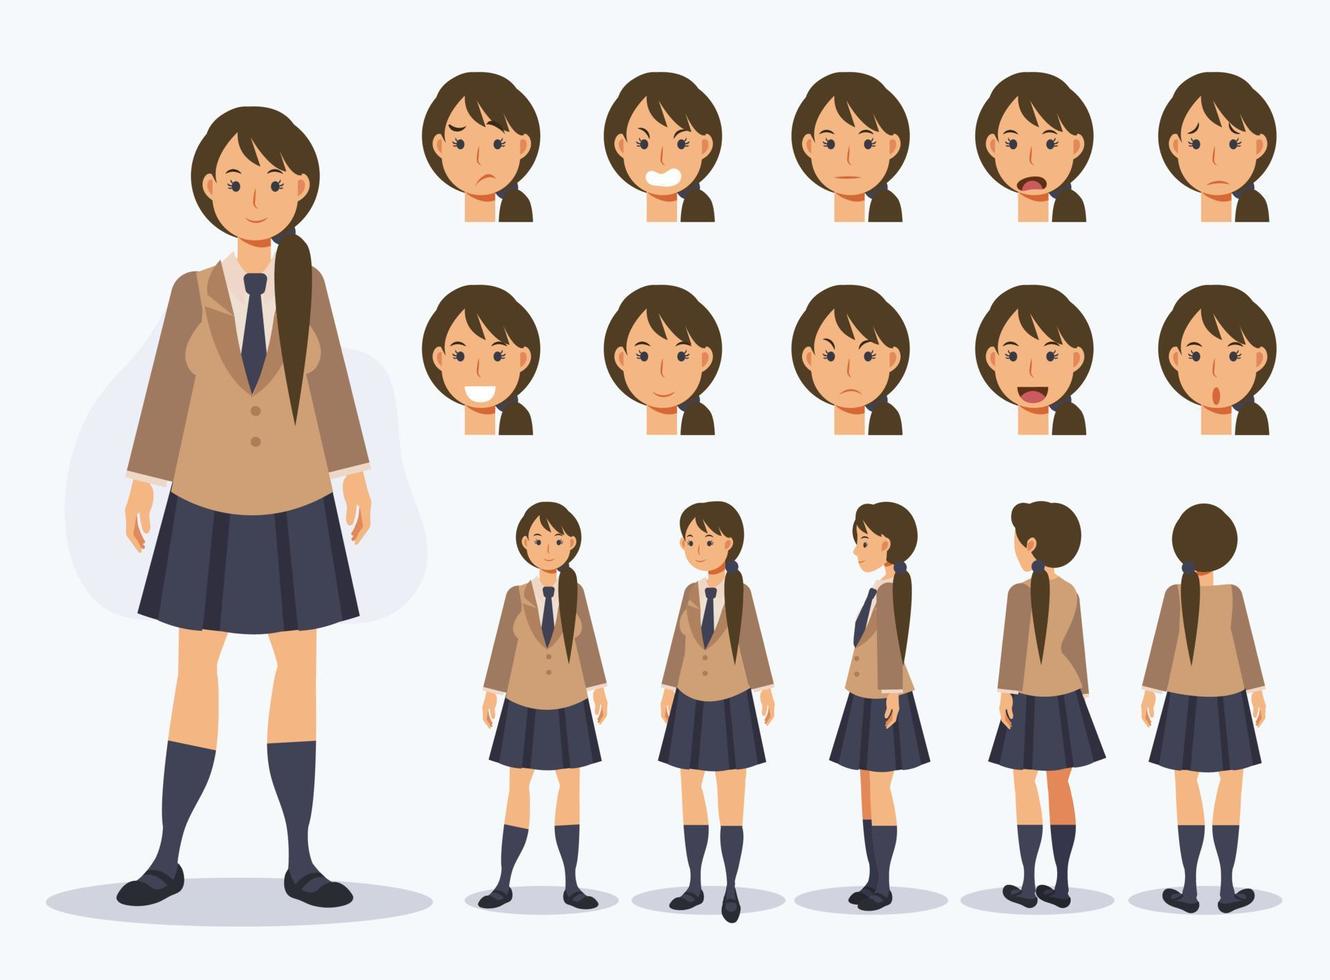 conjunto de chica estudiante japonesa de carácter vectorial plano en uniforme con varias vistas, estilo de dibujos animados. vector